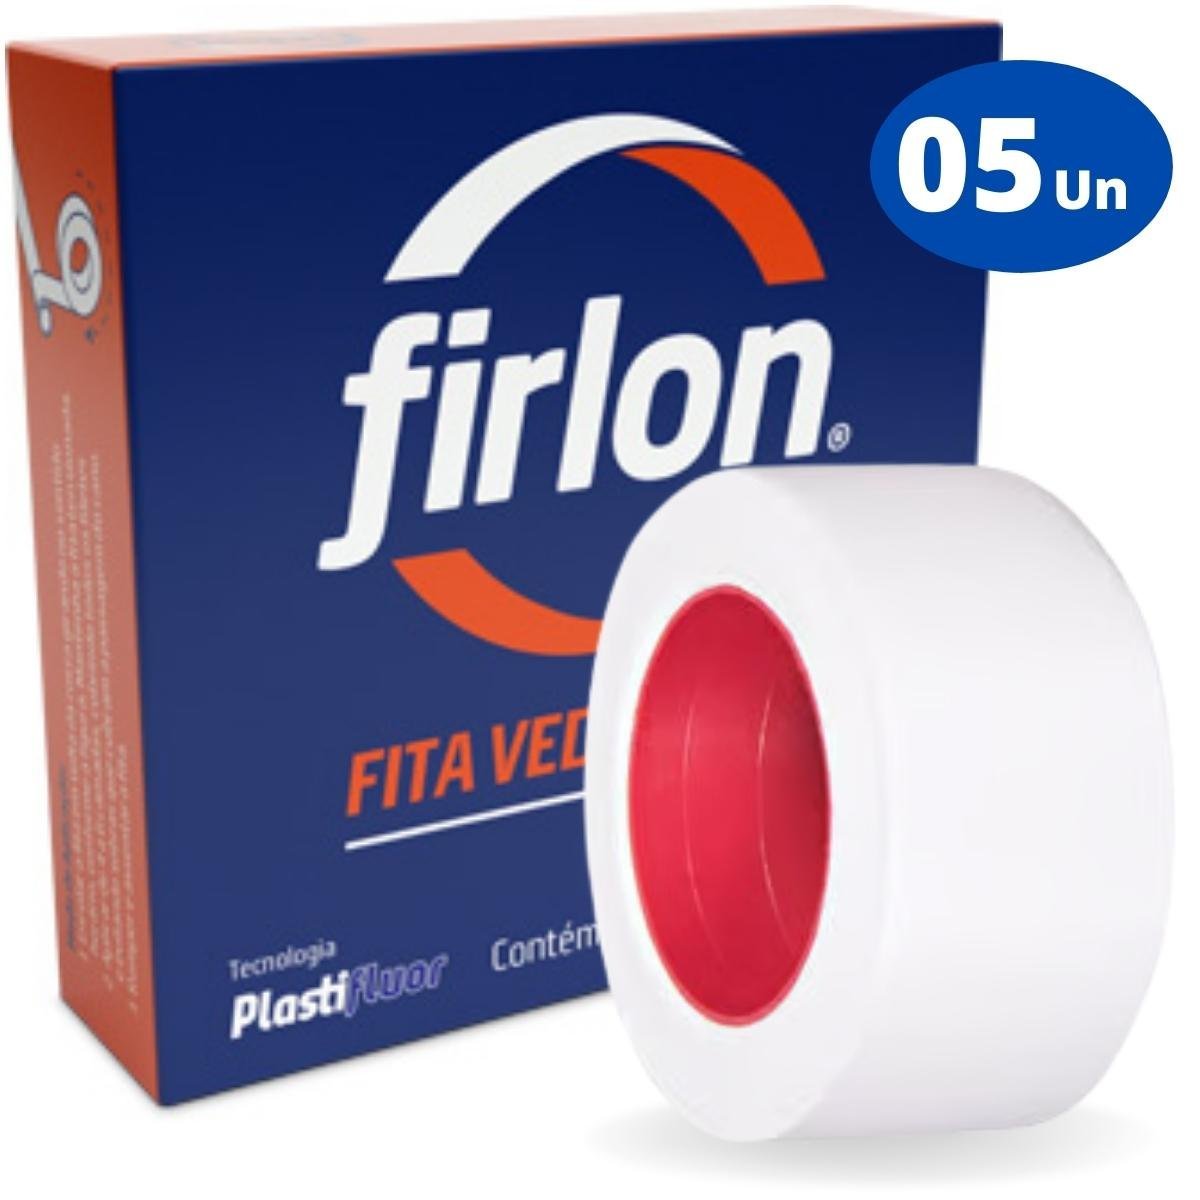 Fita Veda Rosca Teflon 18mm x 50m | Firlon | Kit 05 Un - 6